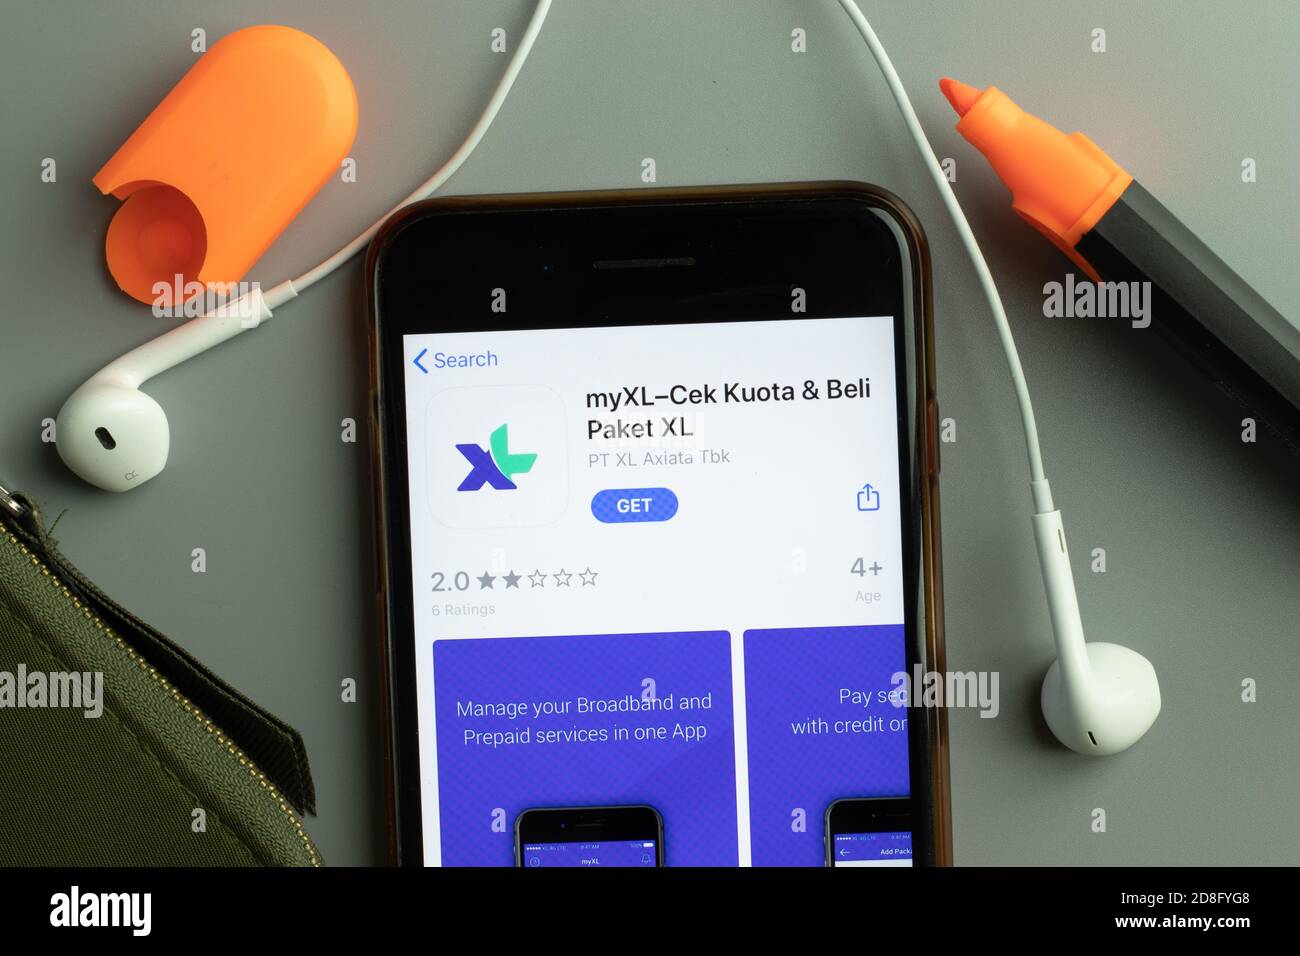 Nueva York, EE.UU. - 26 de octubre de 2020: MyXL CEK Kuota Beli Paket XL icono de la aplicación móvil logotipo en la pantalla del teléfono primer plano, editorial ilustrativa Foto de stock